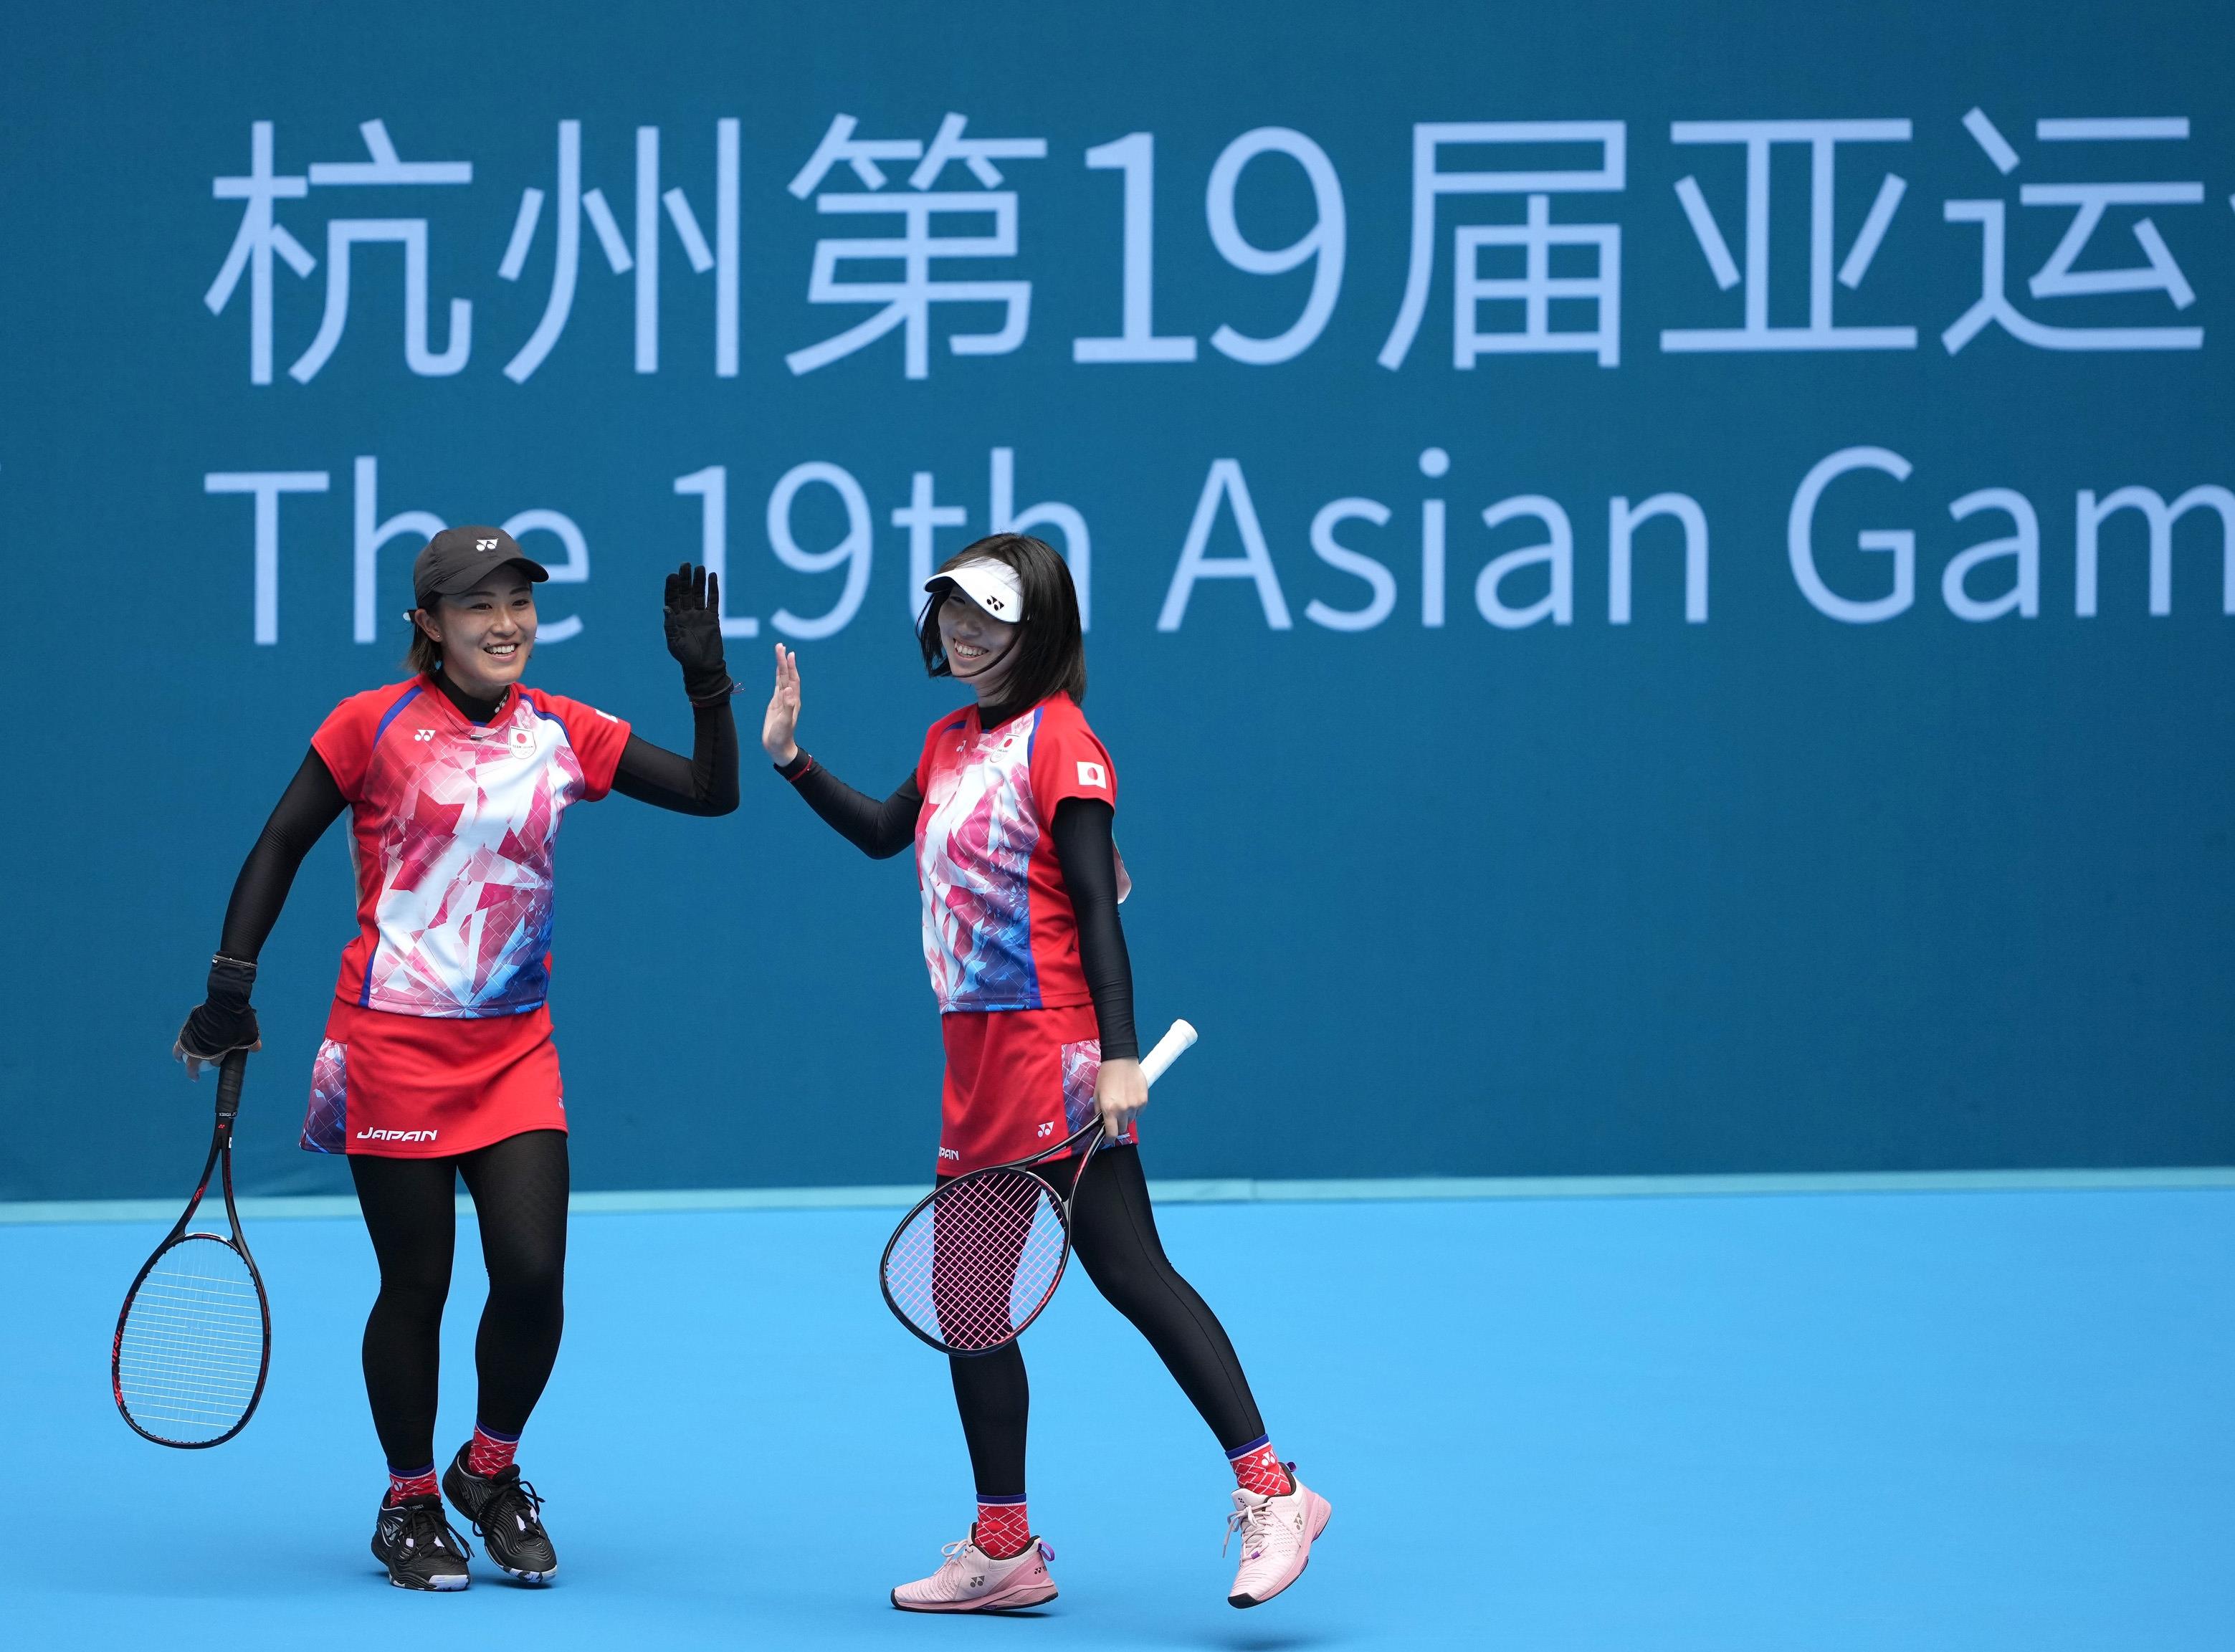 杭州亚运会 | 日本队包揽杭州亚运会软式网球男女团体双冠